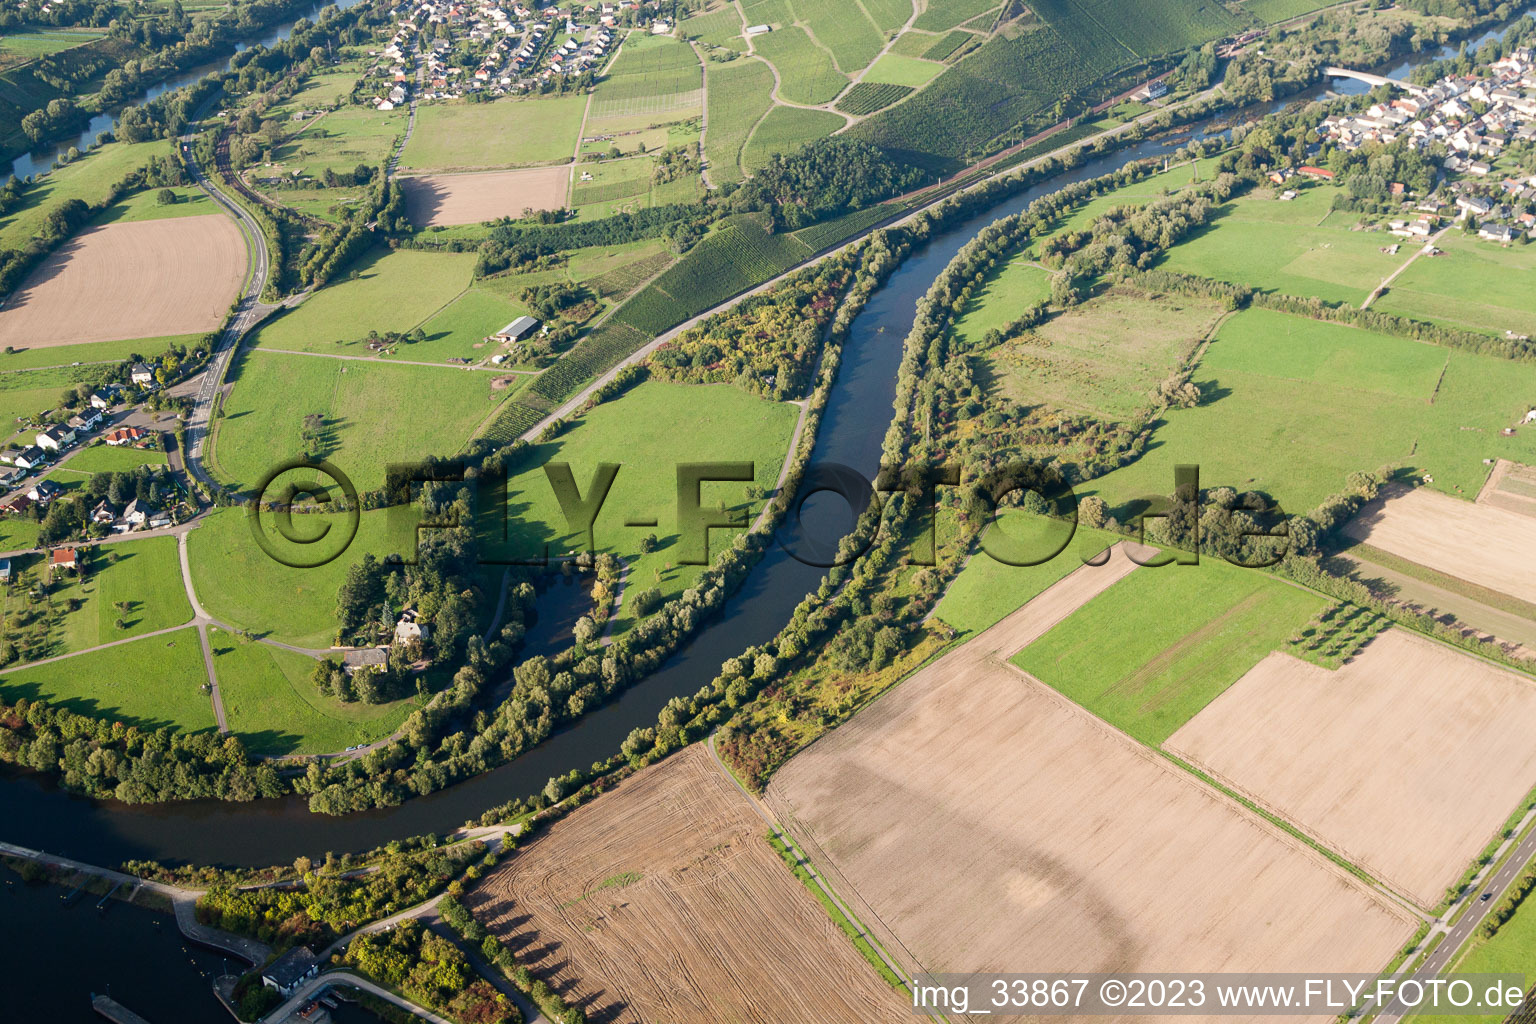 Vue aérienne de Boucle de la Sarre à Hamm dans le département Rhénanie-Palatinat, Allemagne